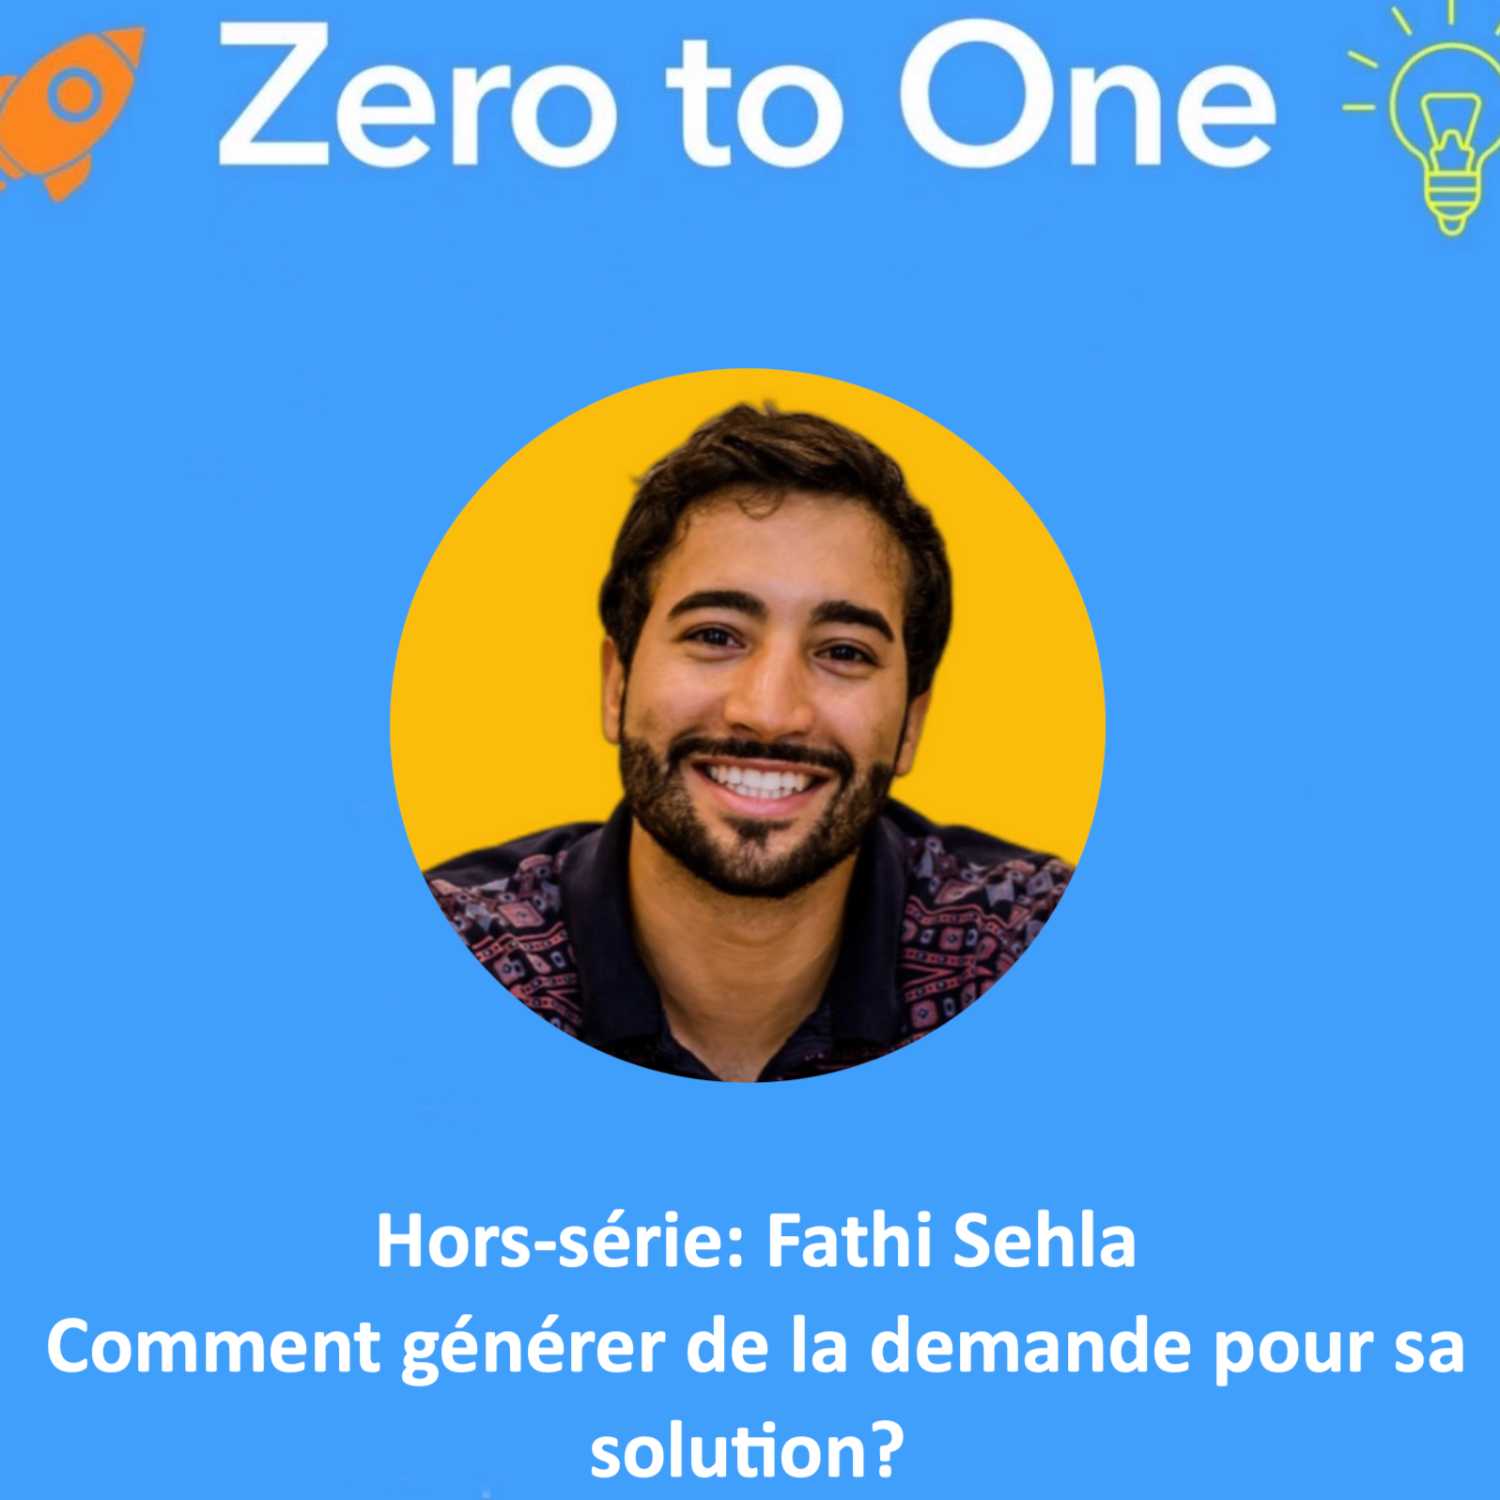 Hors-série: Fathi Sehla - Comment générer de la demande pour sa solution? 🗣